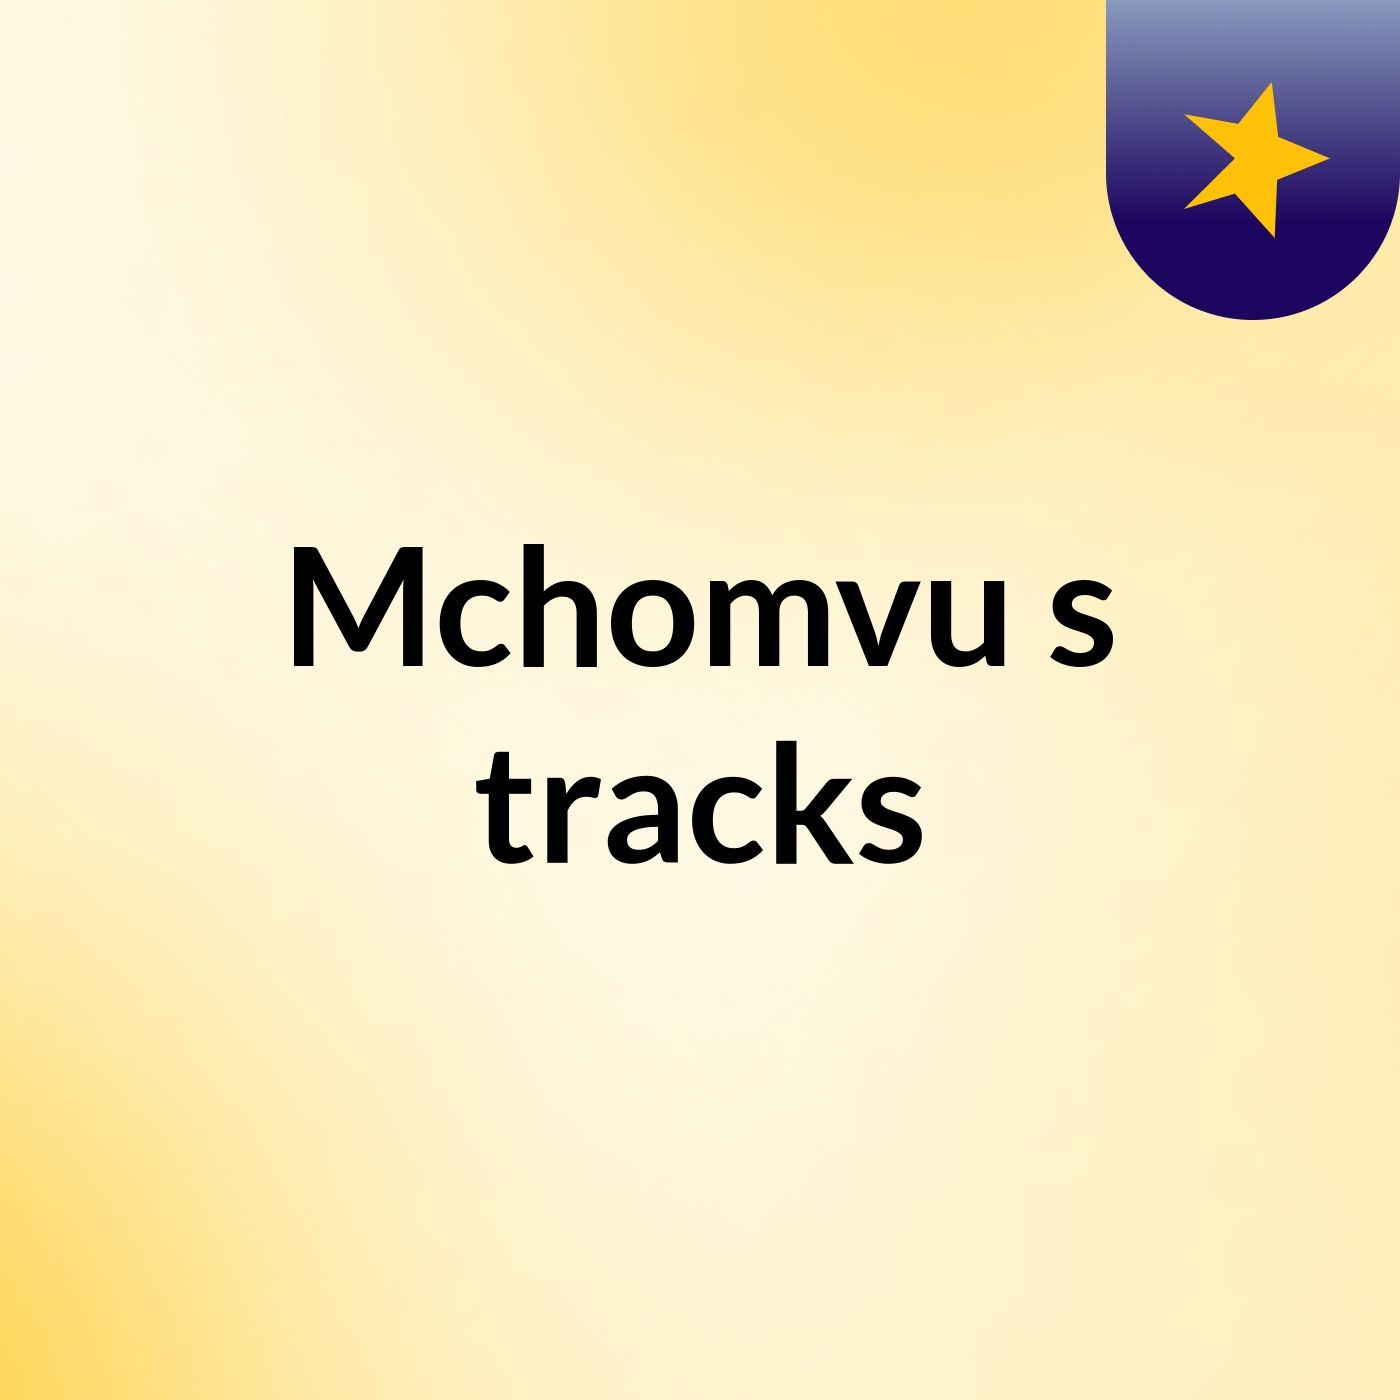 Mchomvu's tracks